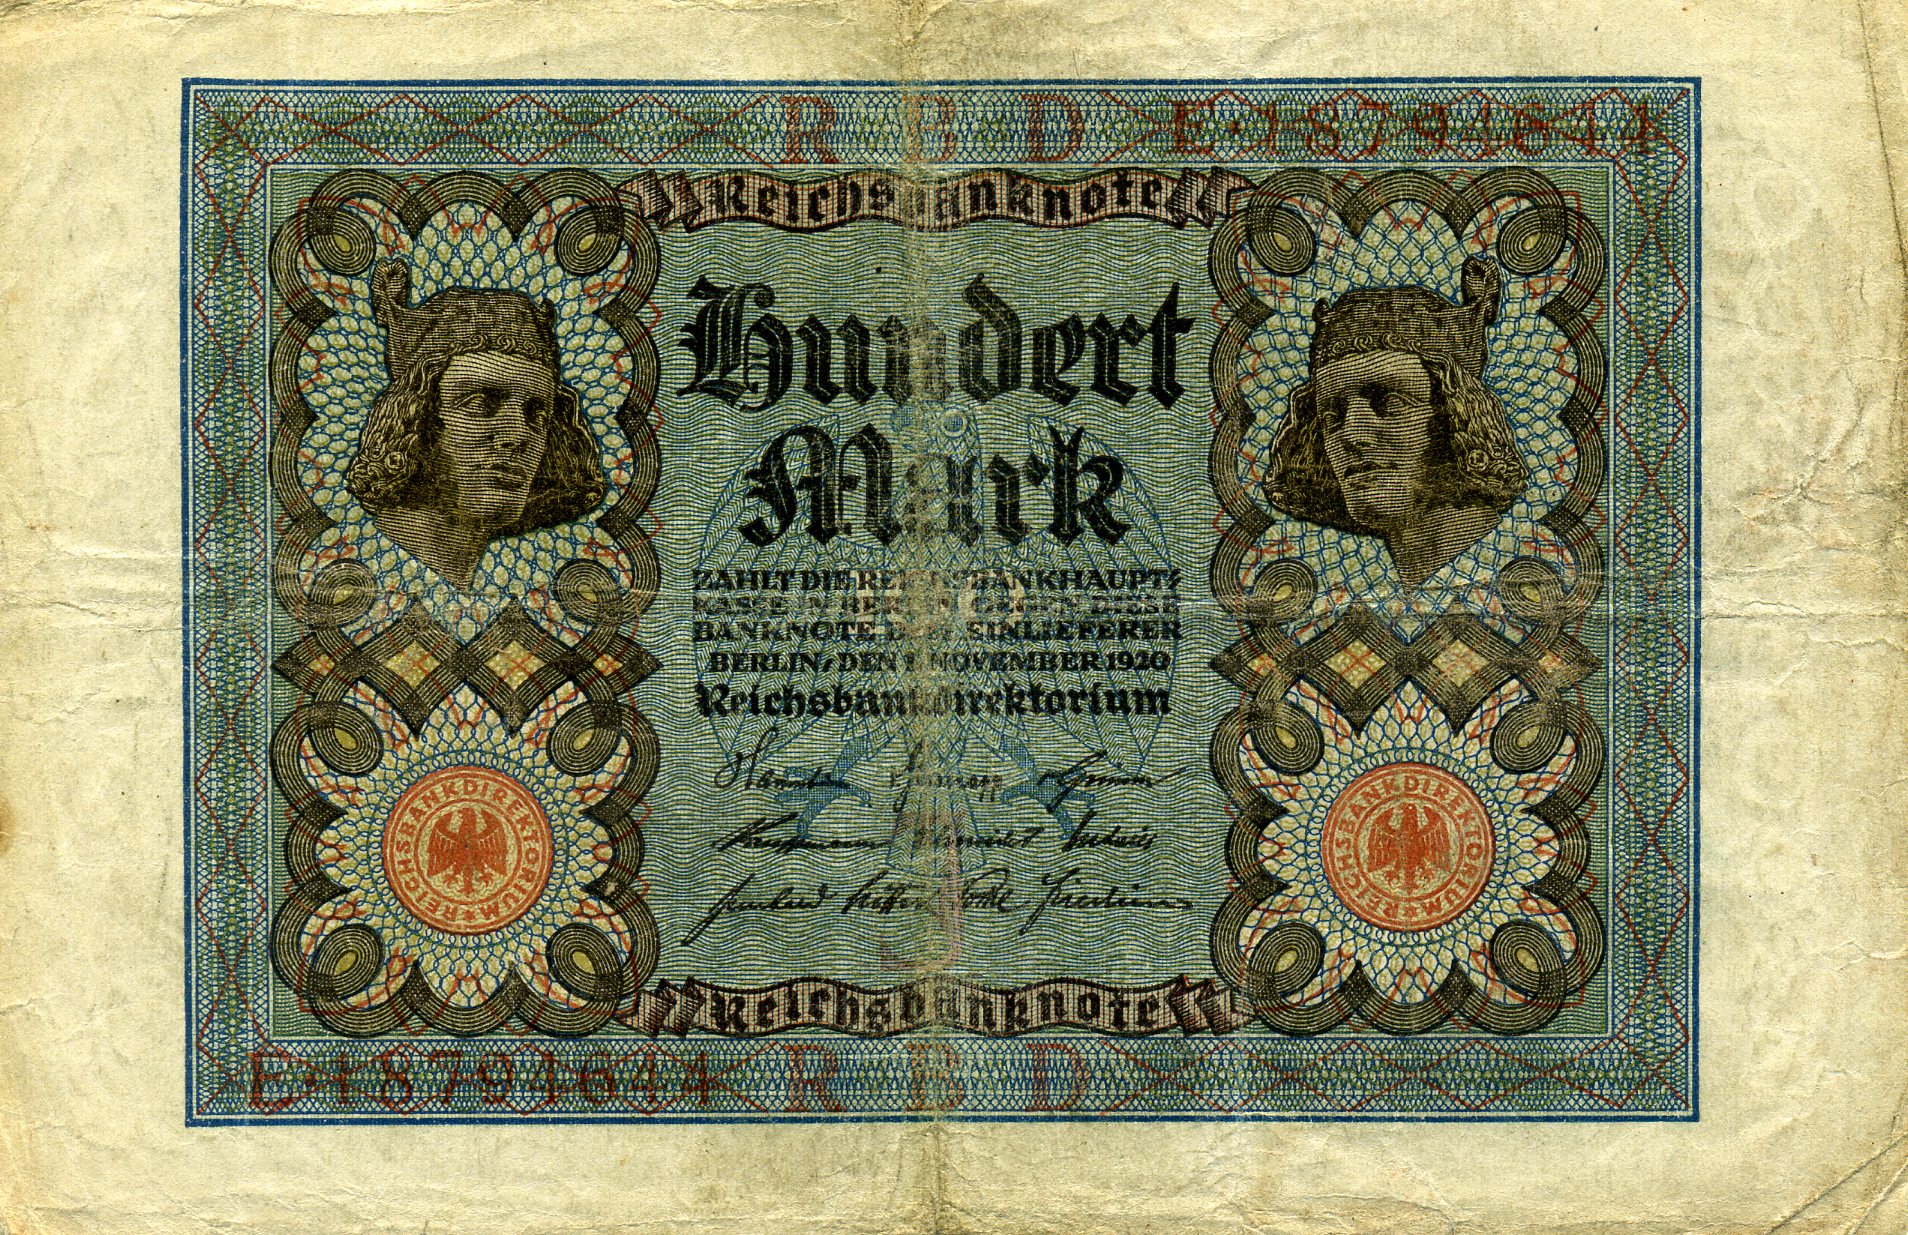 100 марок 1 ноября 1920 года. Аверс. Реферат Рефератович.